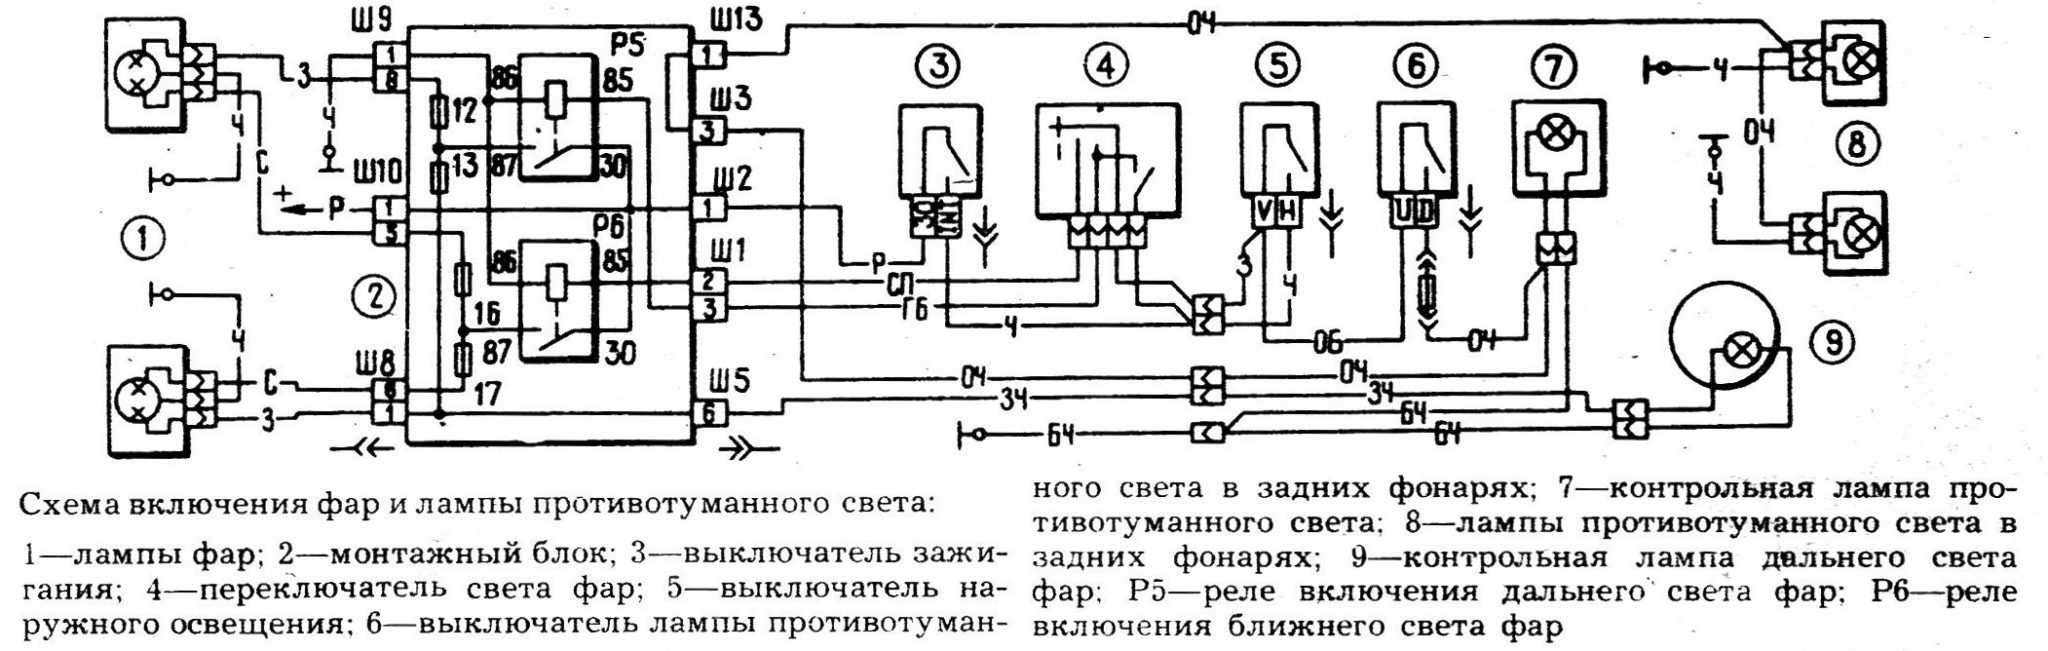 Электрическая схема ваз 2107 инжектор - tokzamer.ru